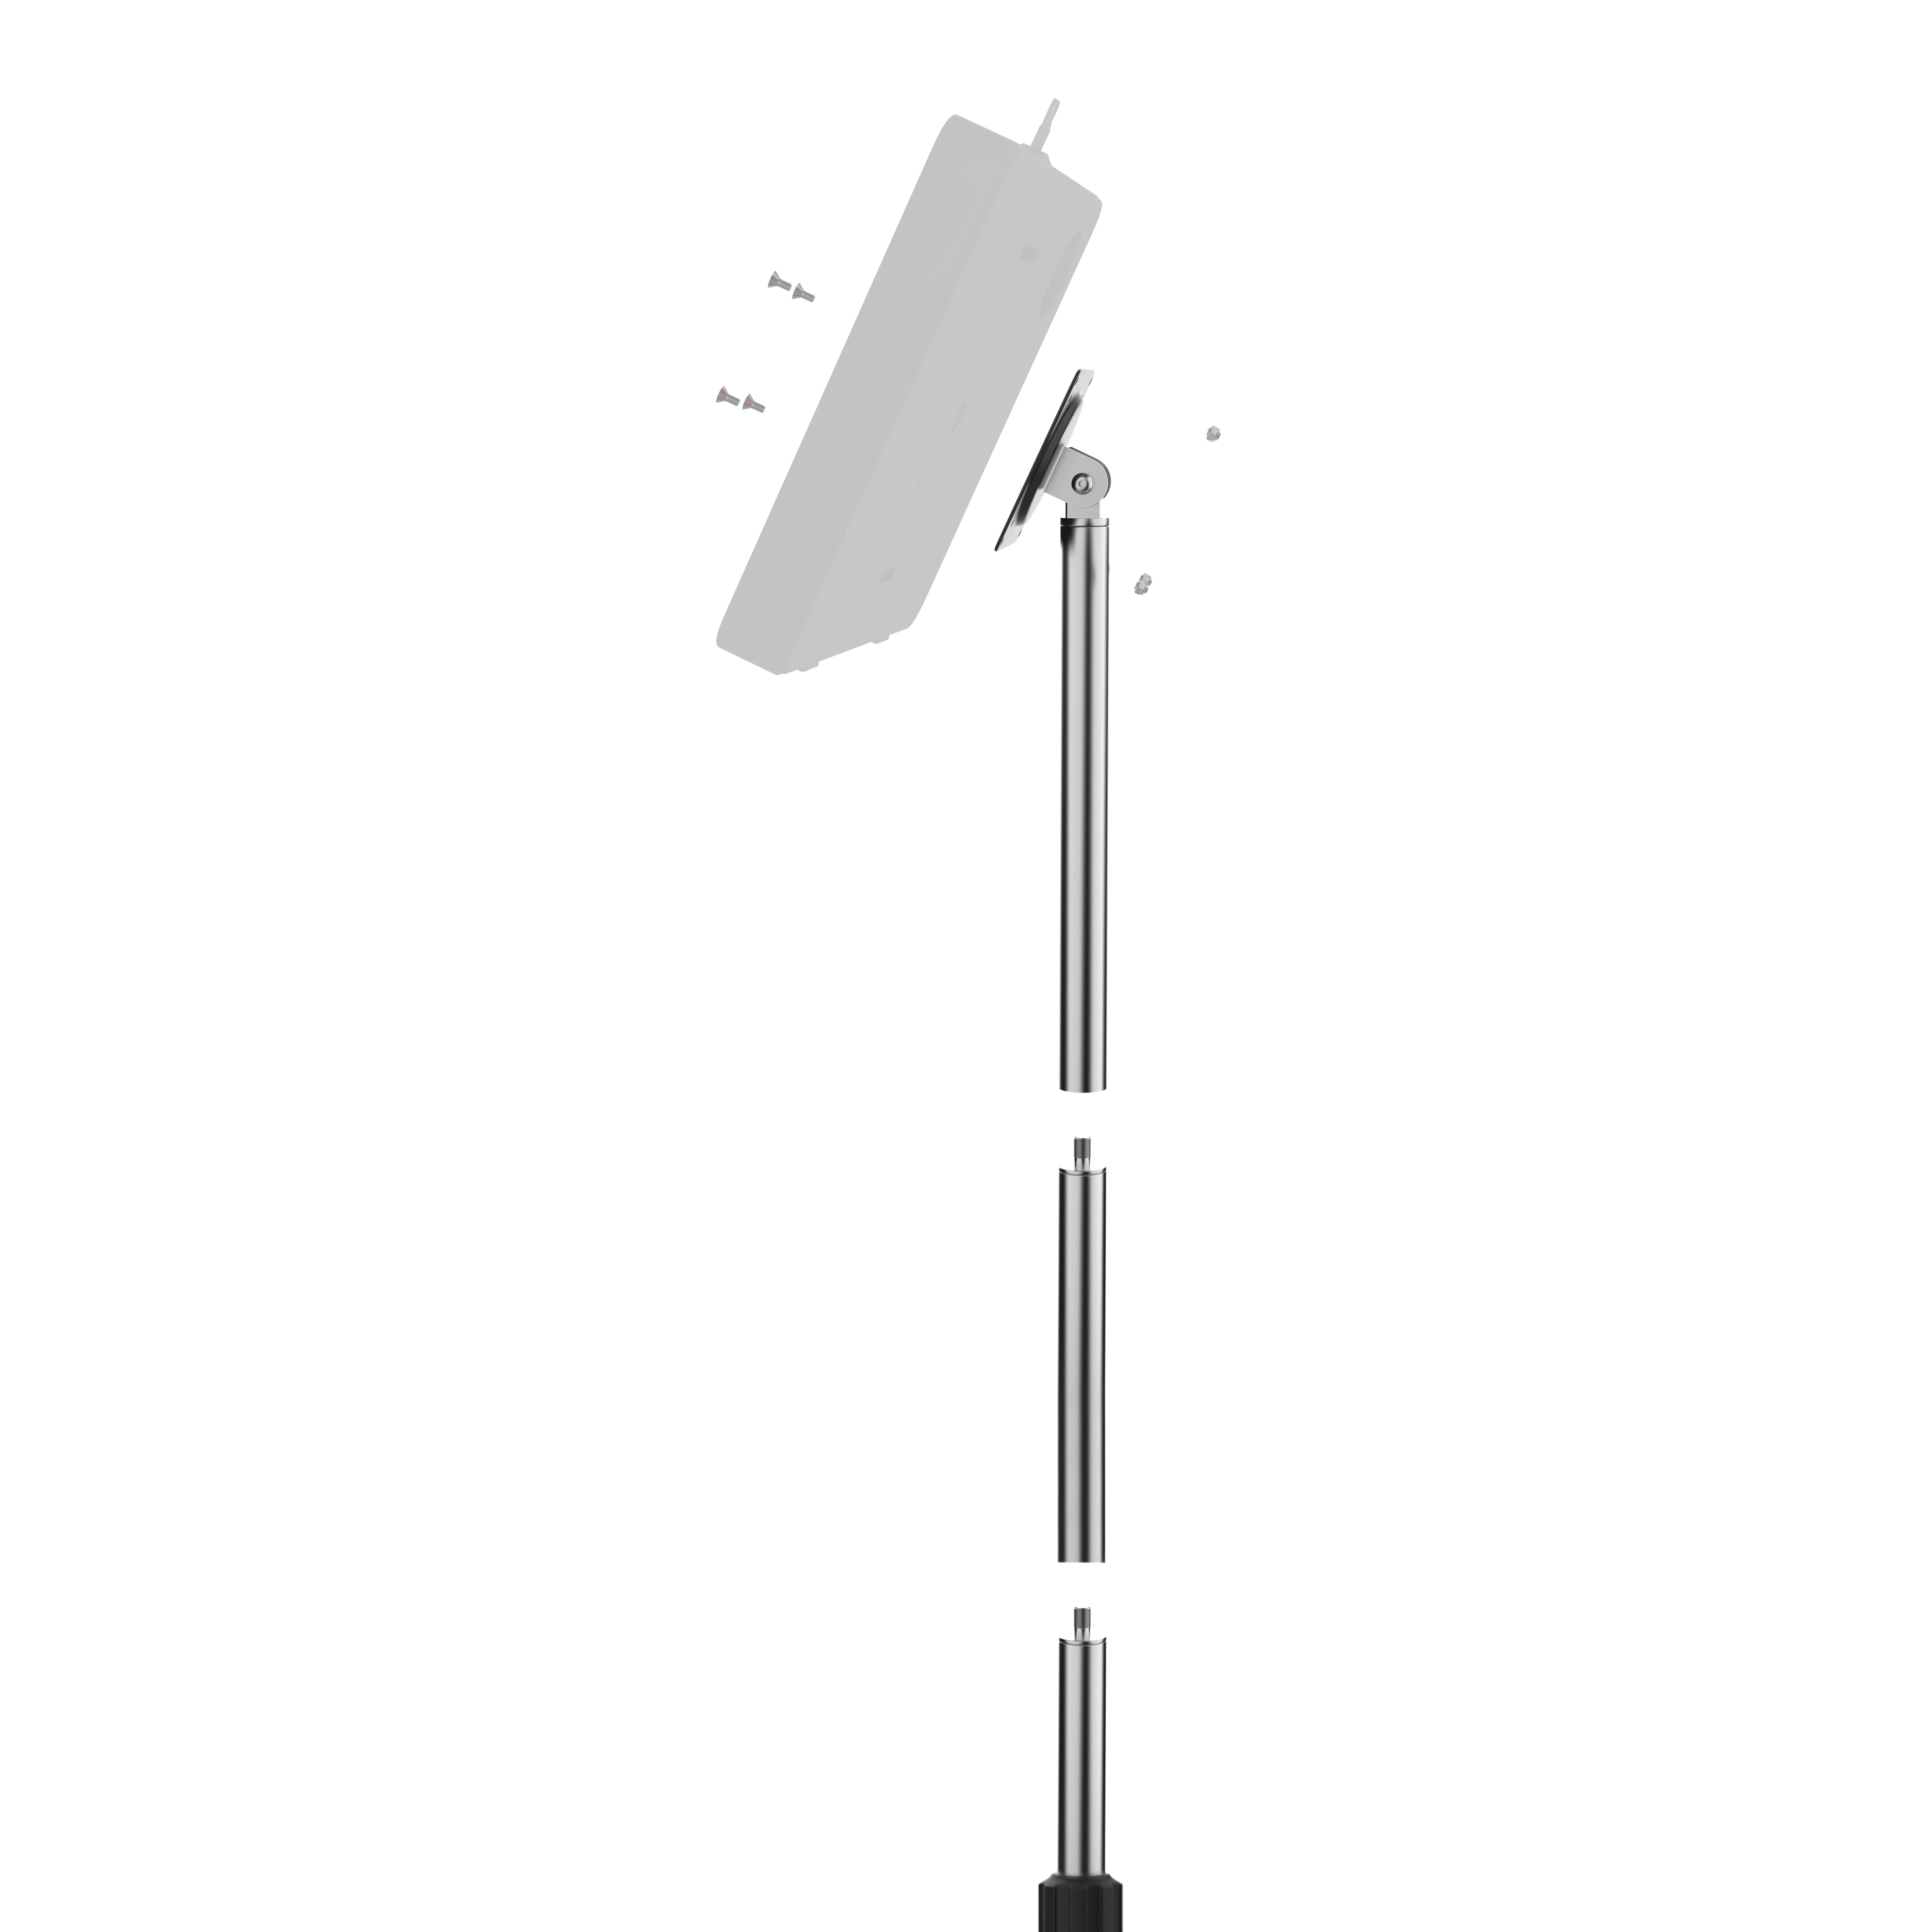 VESA-Compatible, Height-Adjustable Floor Stand